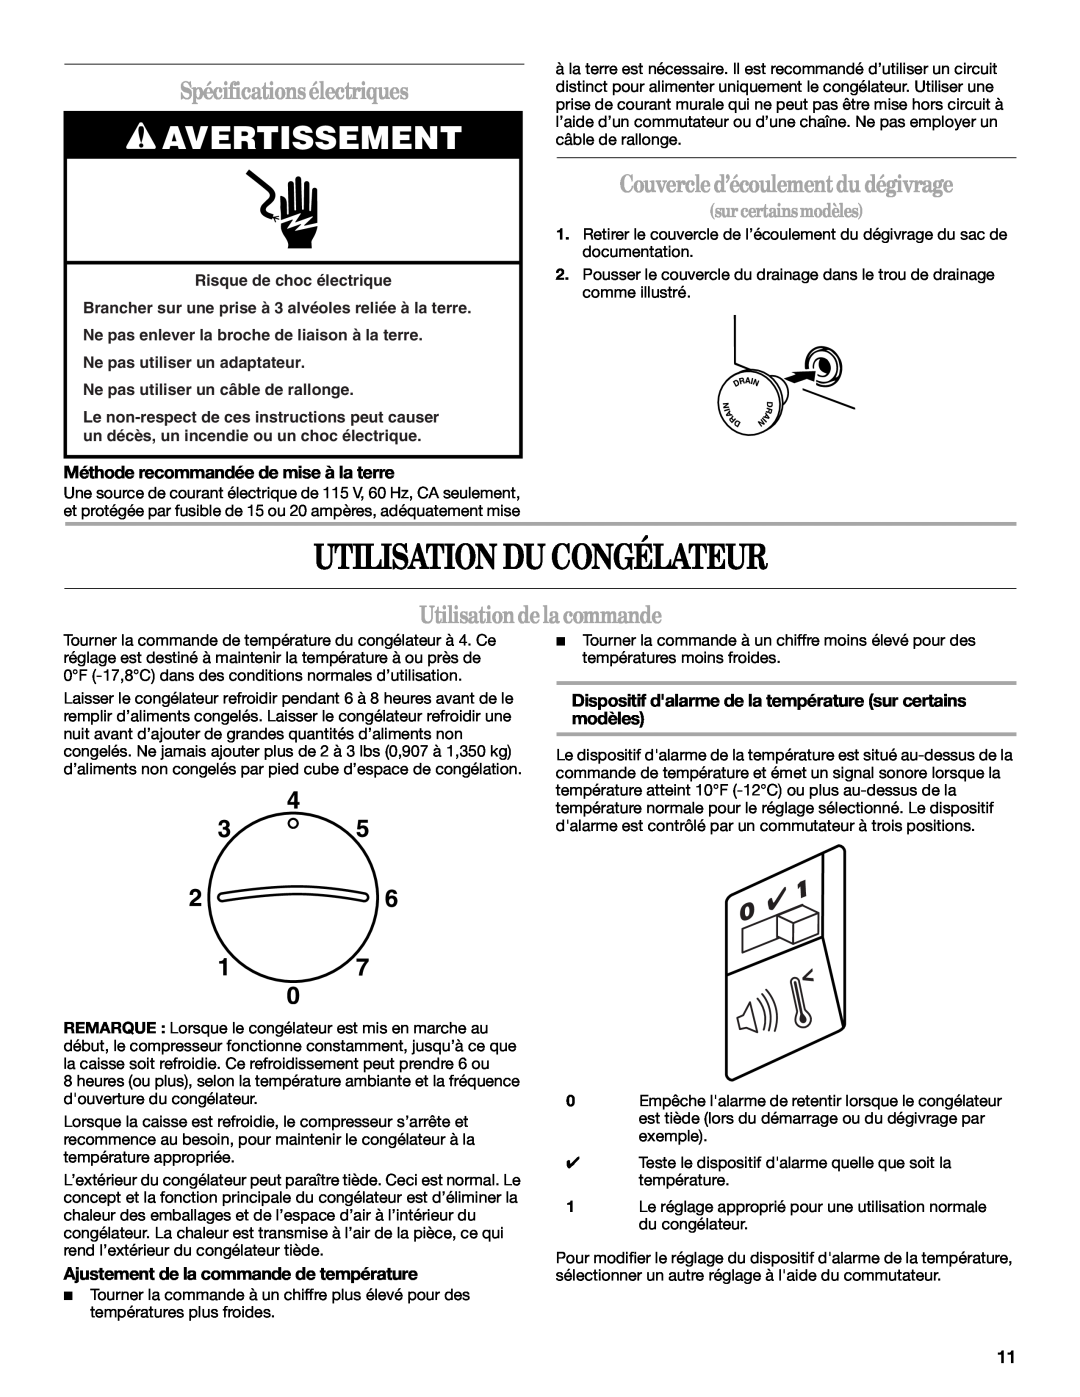 Whirlpool EH070CFXCO manual Utilisation Du Congélateur, Spécificationsélectriques, Couvercled’écoulementdu dégivrage 